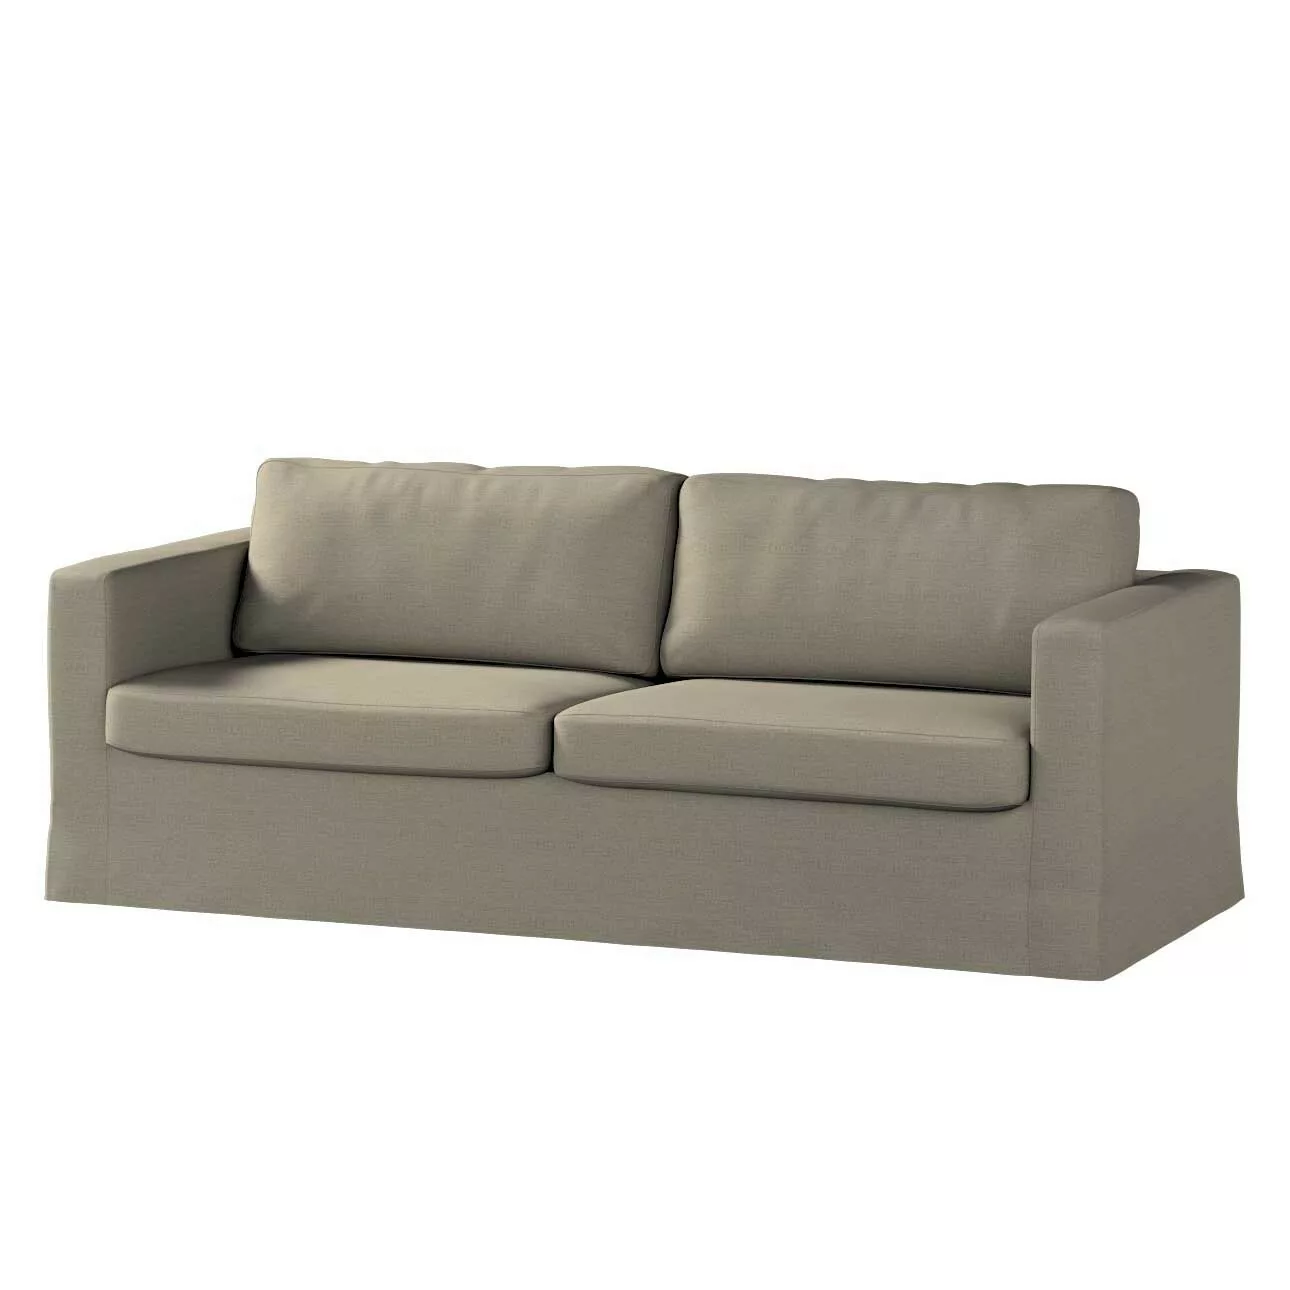 Bezug für Karlstad 3-Sitzer Sofa nicht ausklappbar, lang, grau-braun, Bezug günstig online kaufen